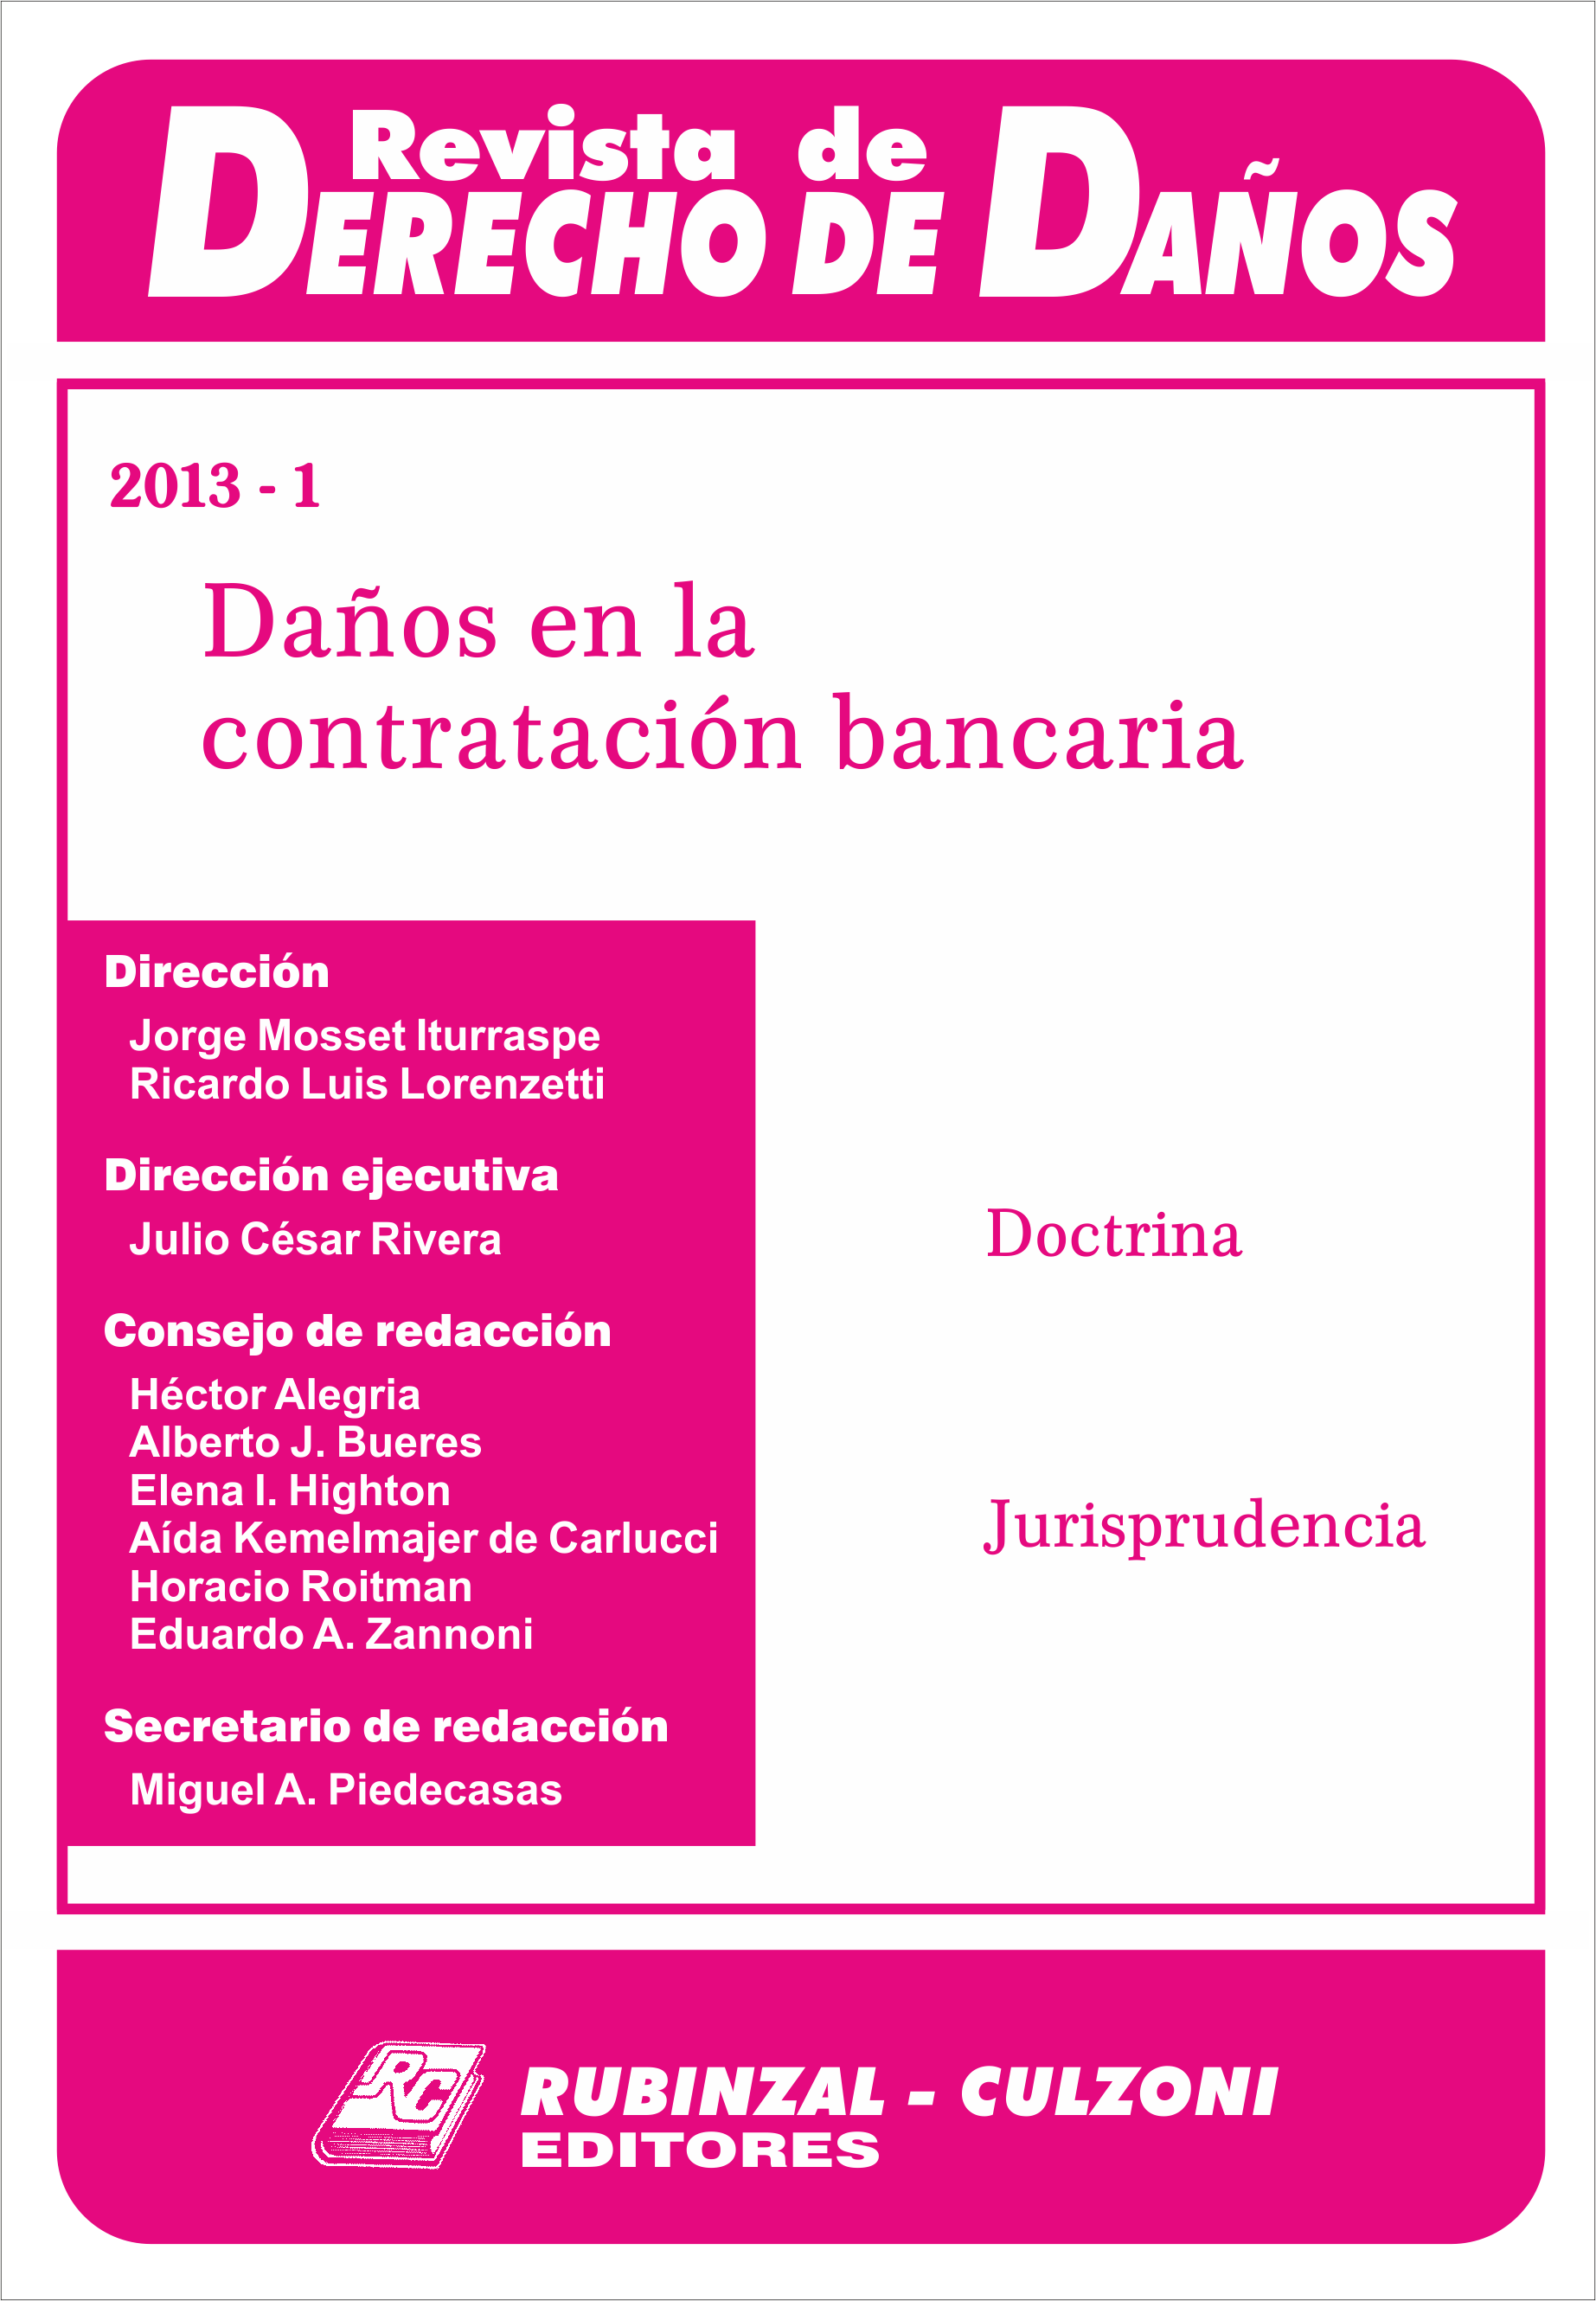 Revista de Derecho de Daños - Daños en la contratación Bancaria.